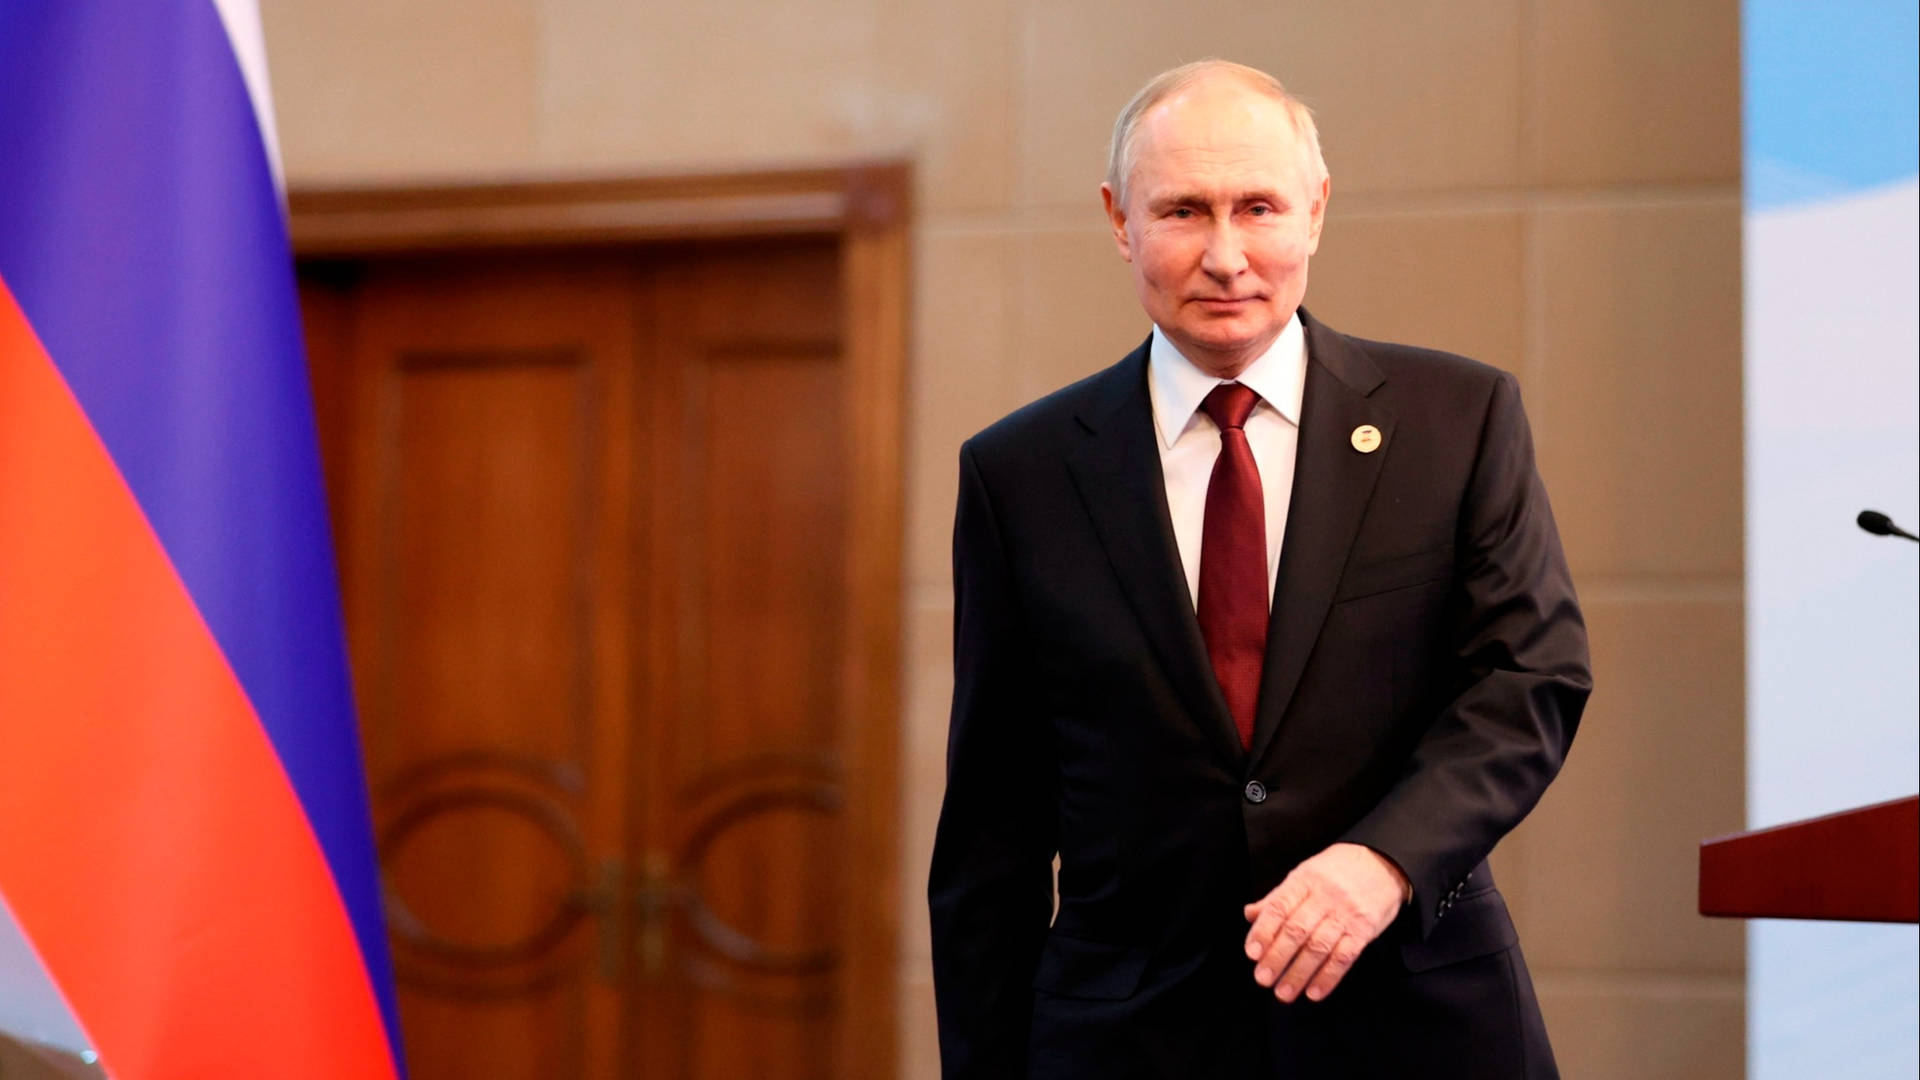 Vladimir Putin Walking Away From Podium Wallpaper